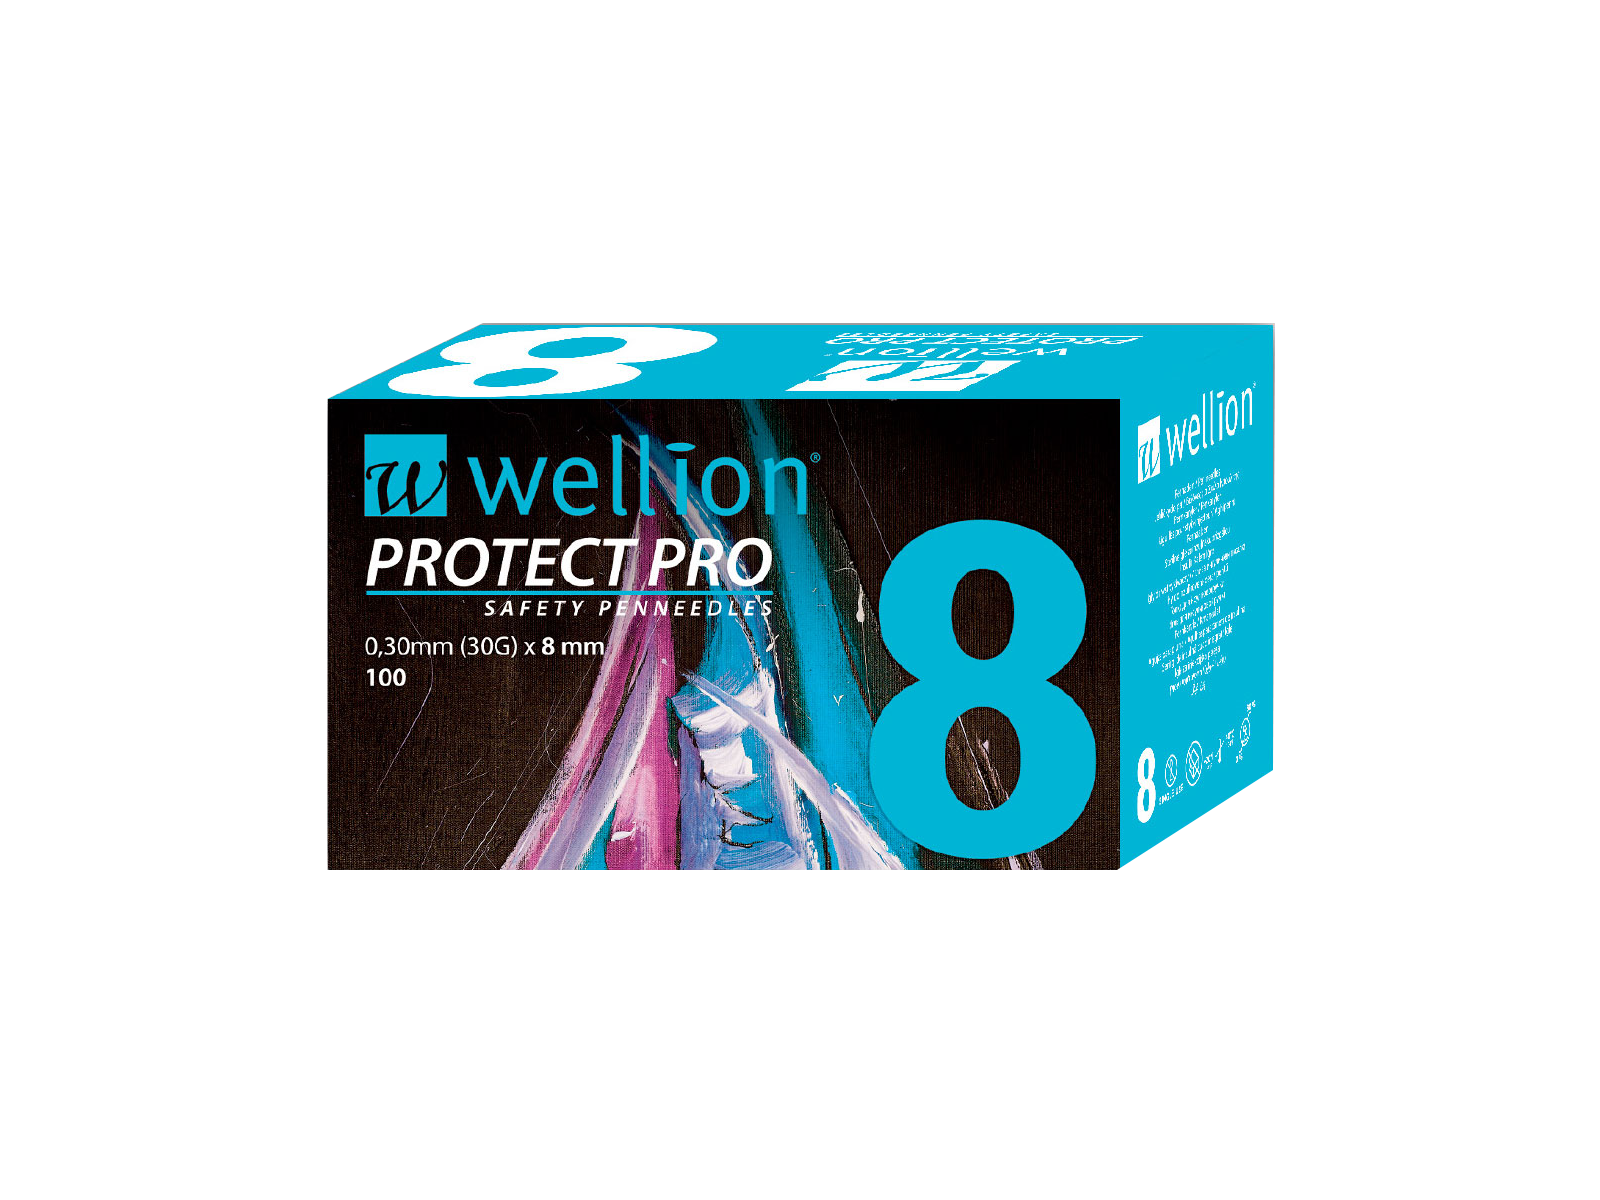 WELL128 Wellion PROTECT PRO Sicherheitspennadeln (Safety Pennadeln), 100 Stück